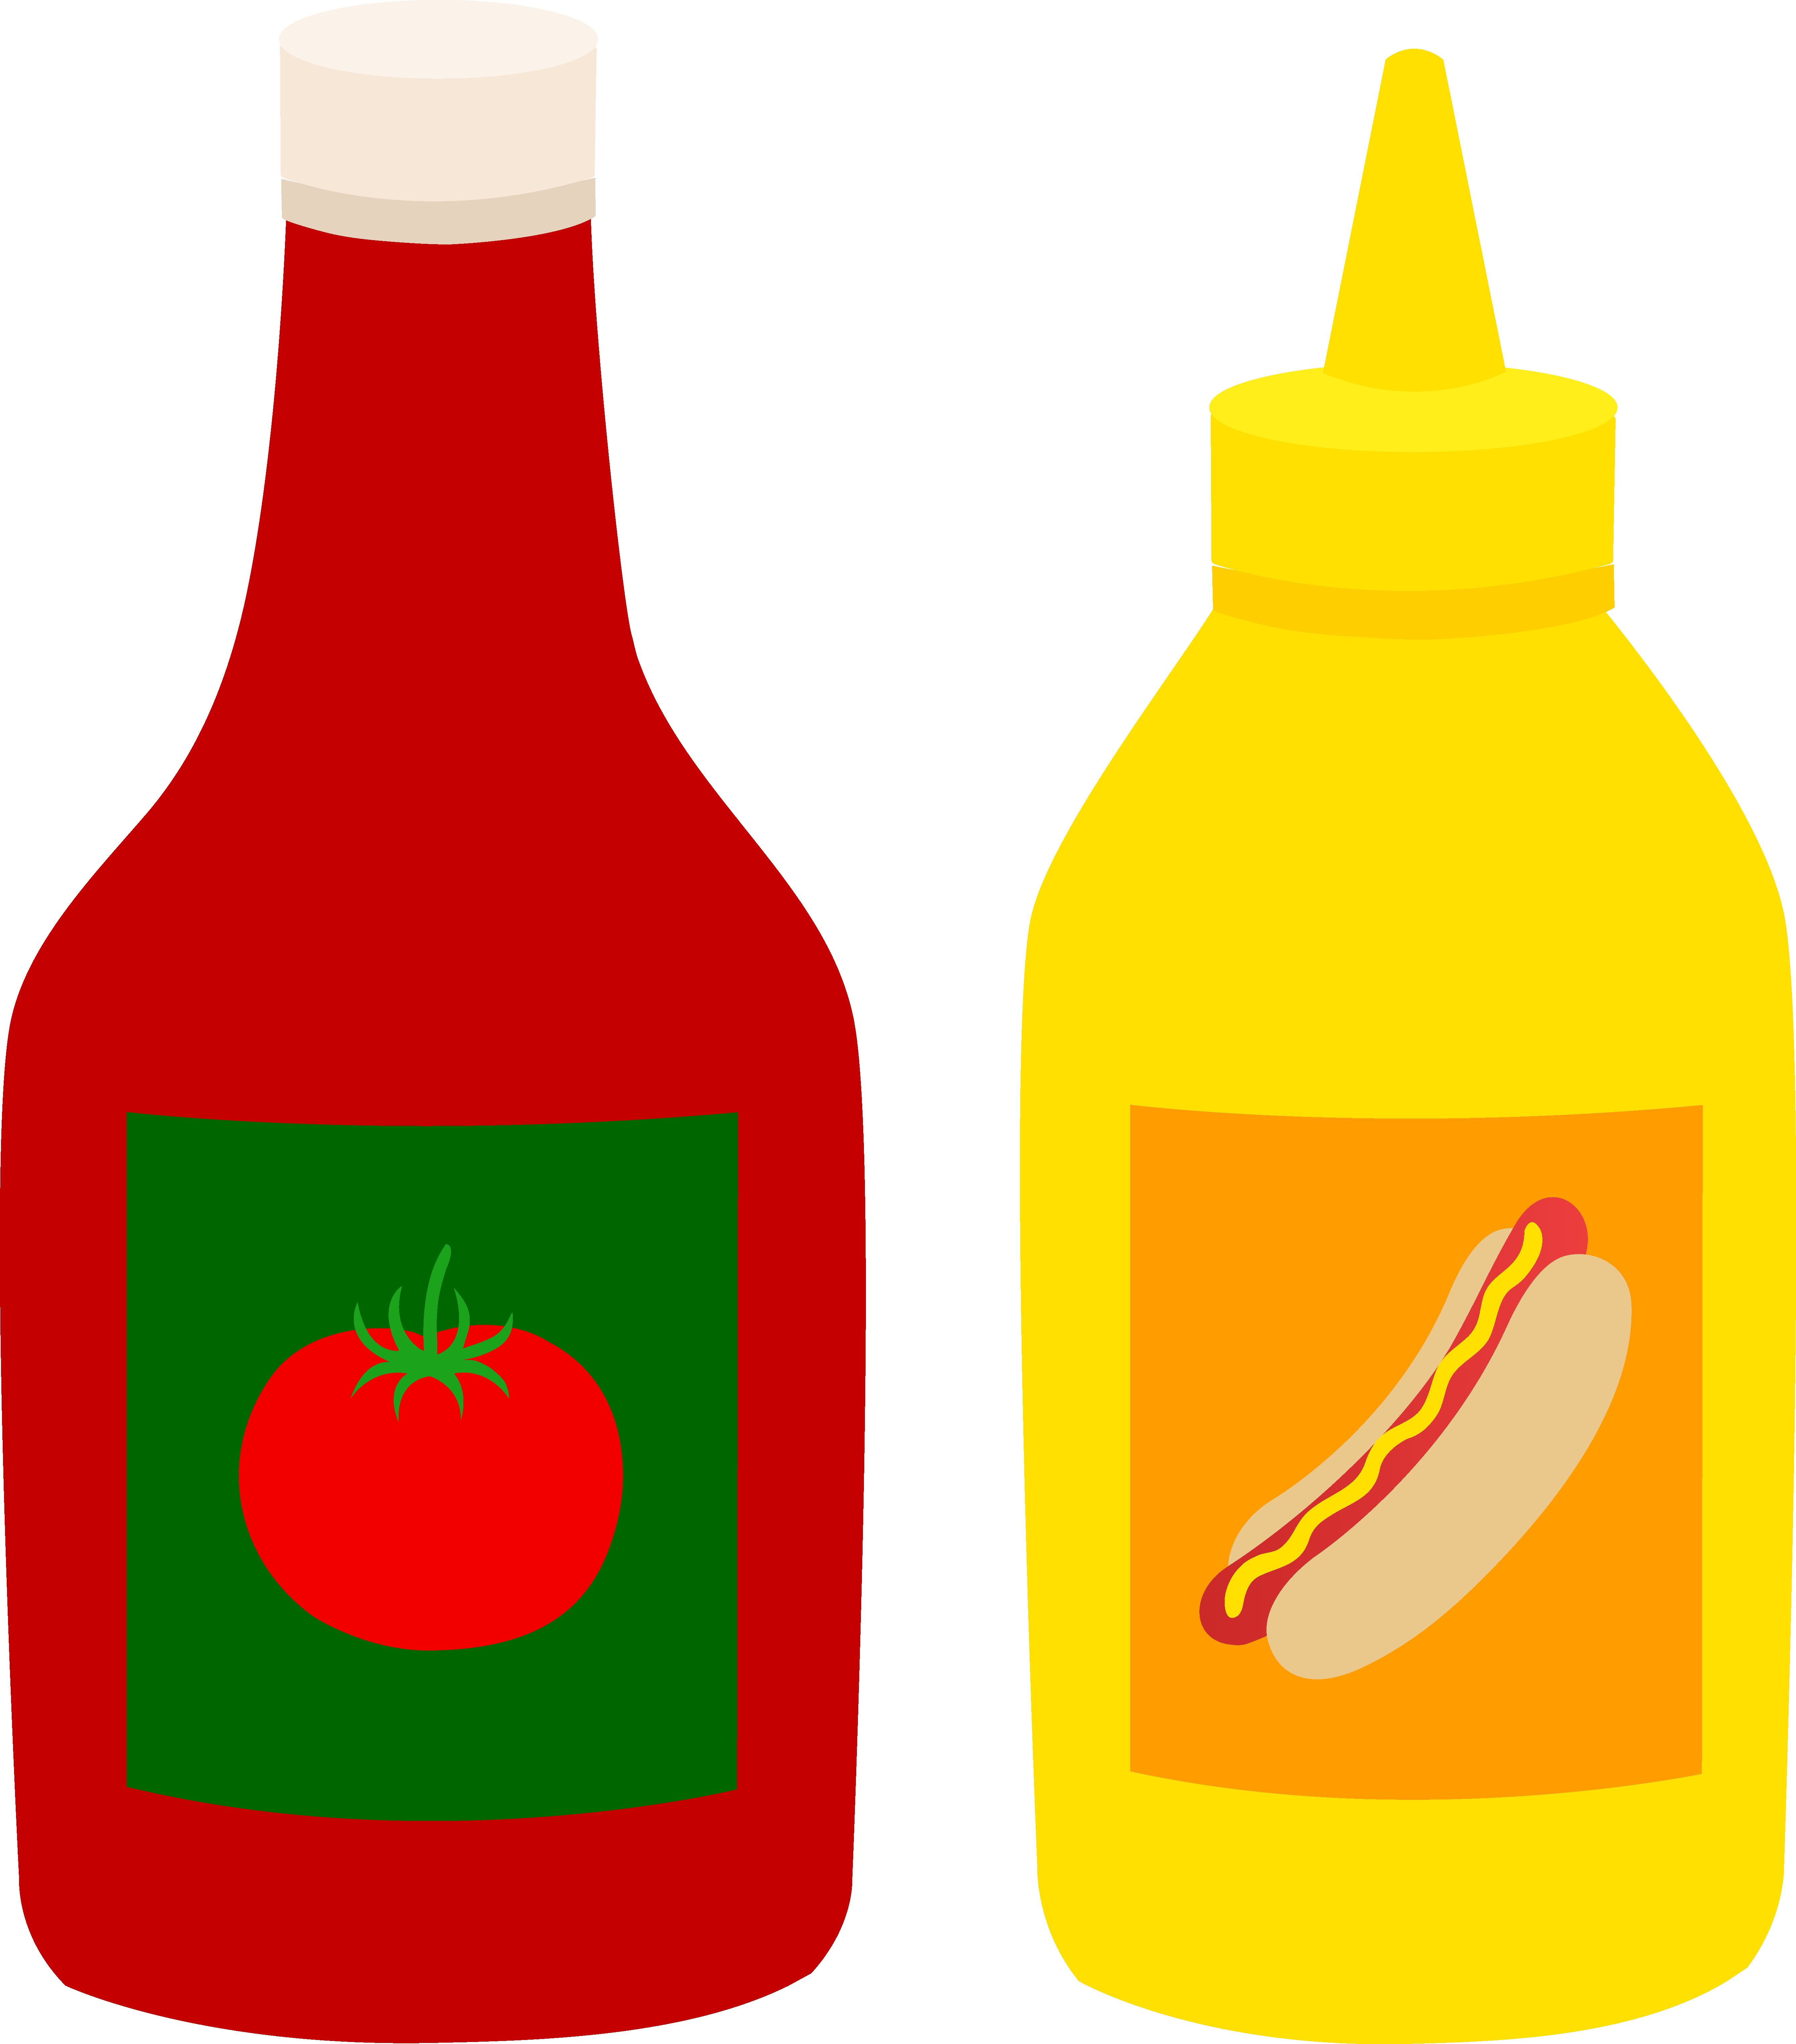 ketchup and mustard clipart